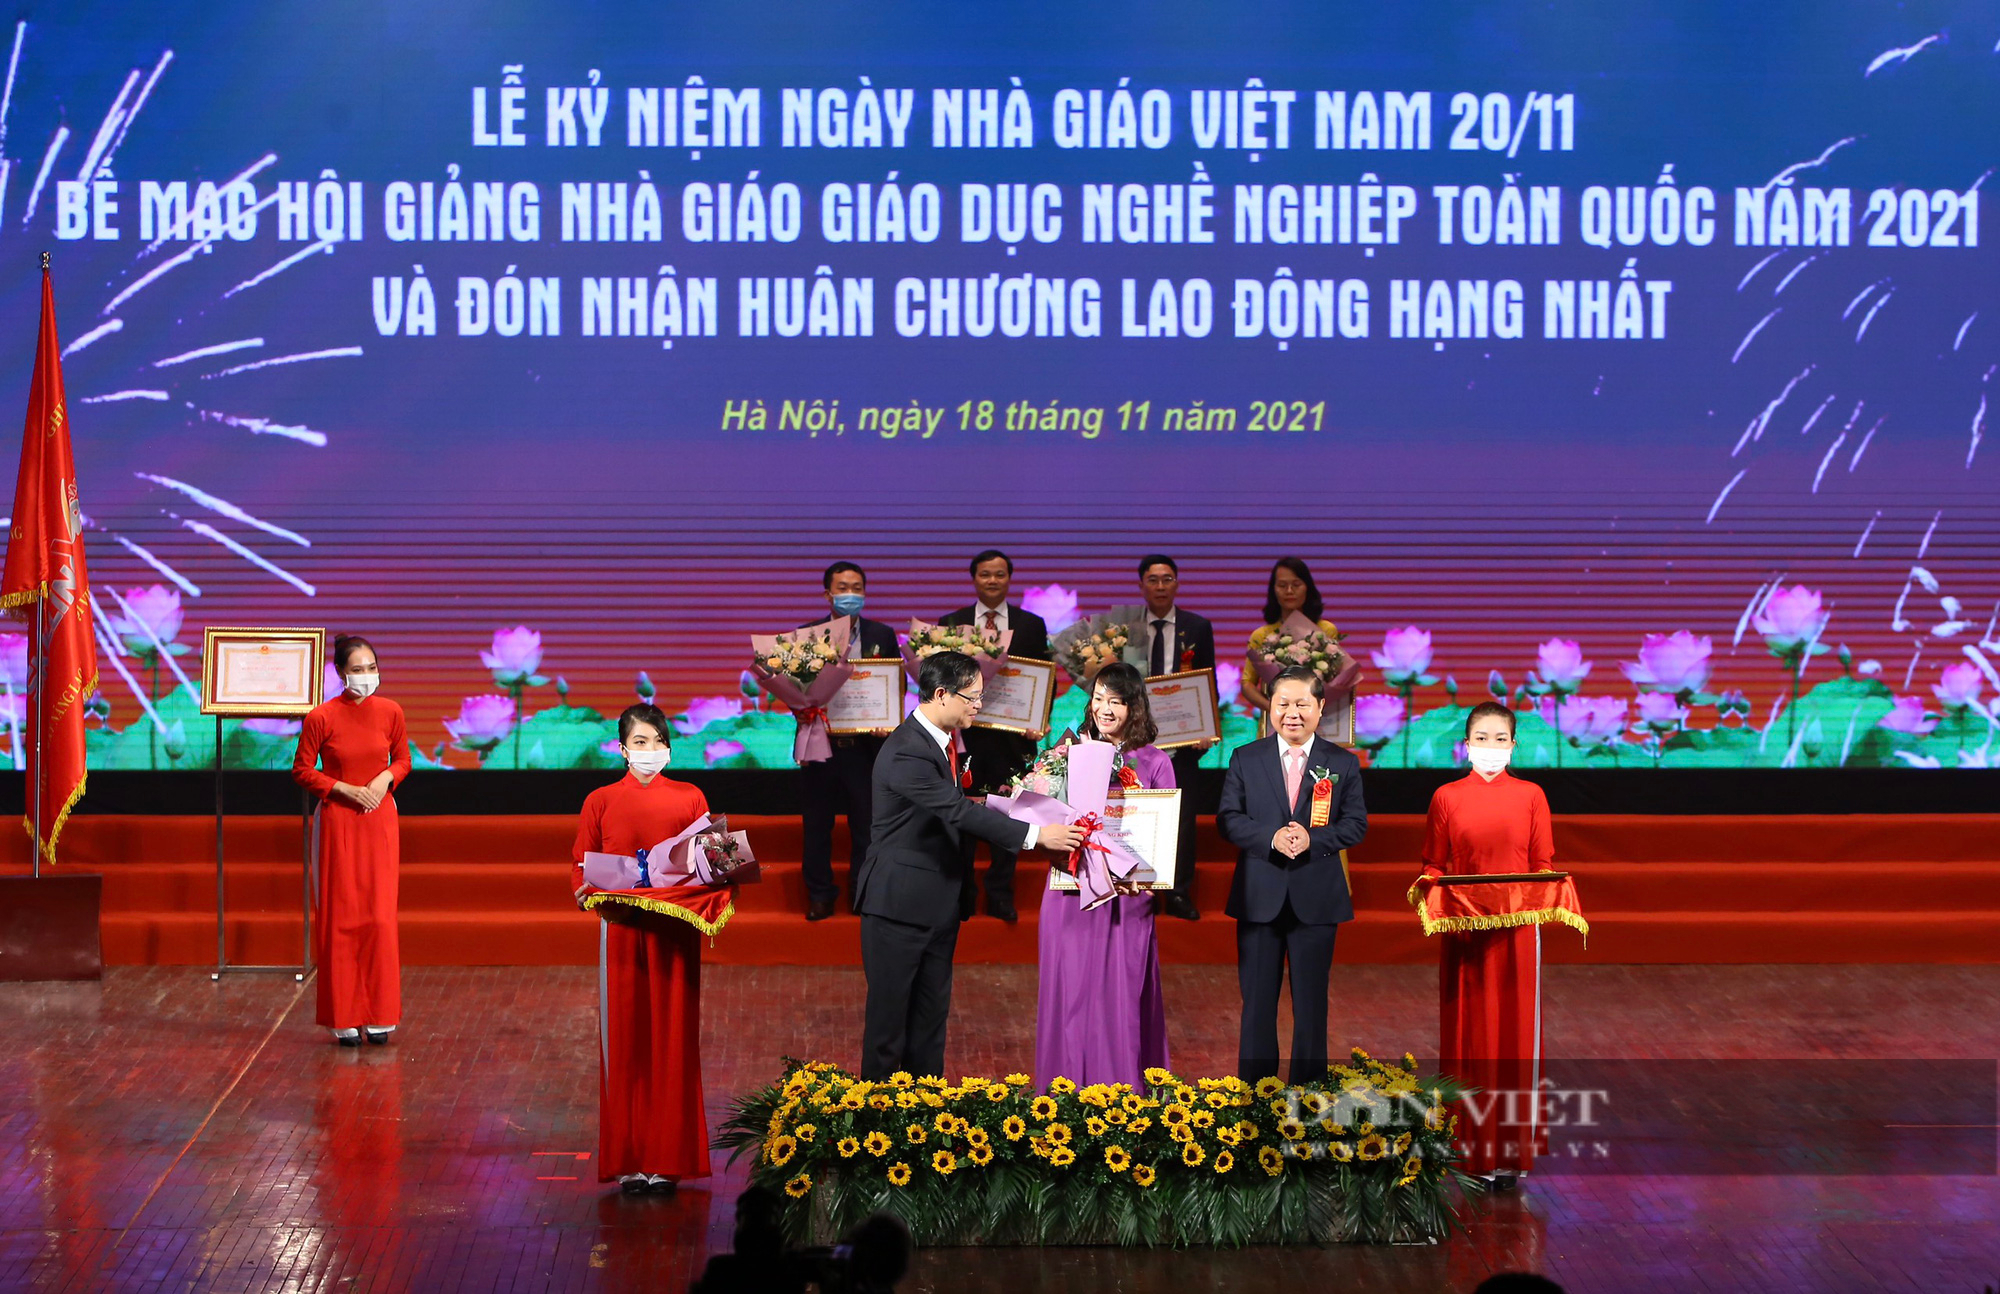 Ngày Nhà giáo Việt Nam 20/11: Tri ân các nhà giáo &quot;Thực tâm – Thực tài – Thực nghề&quot;   - Ảnh 1.